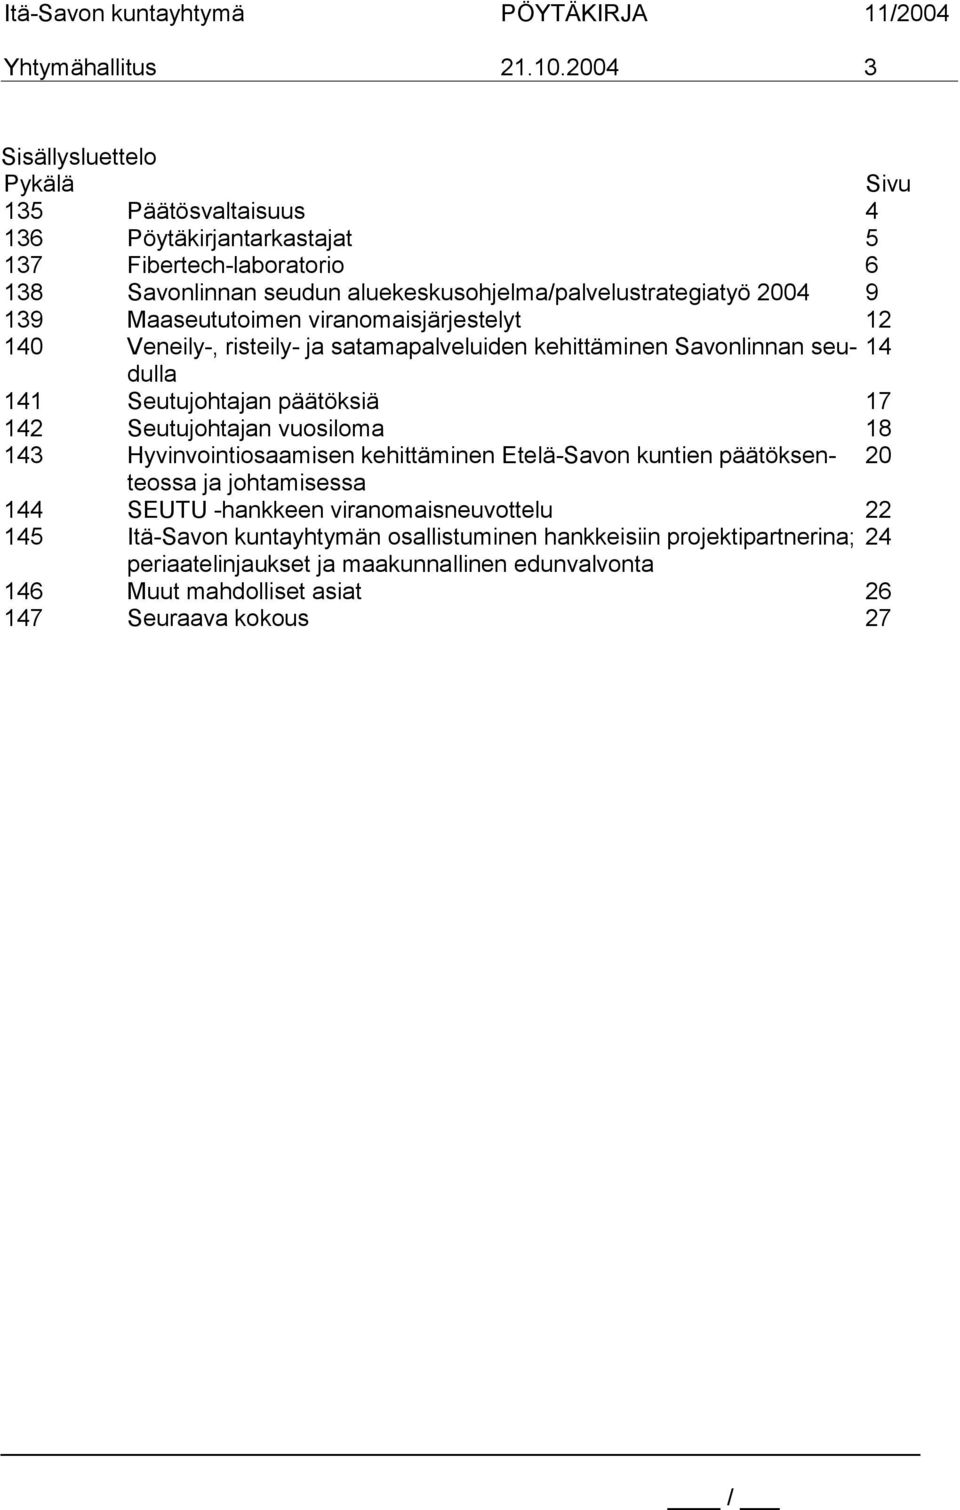 2004 9 139 Maaseututoimen viranomaisjärjestelyt 12 140 Veneily-, risteily- ja satamapalveluiden kehittäminen Savonlinnan seudulla 14 141 Seutujohtajan päätöksiä 17 142